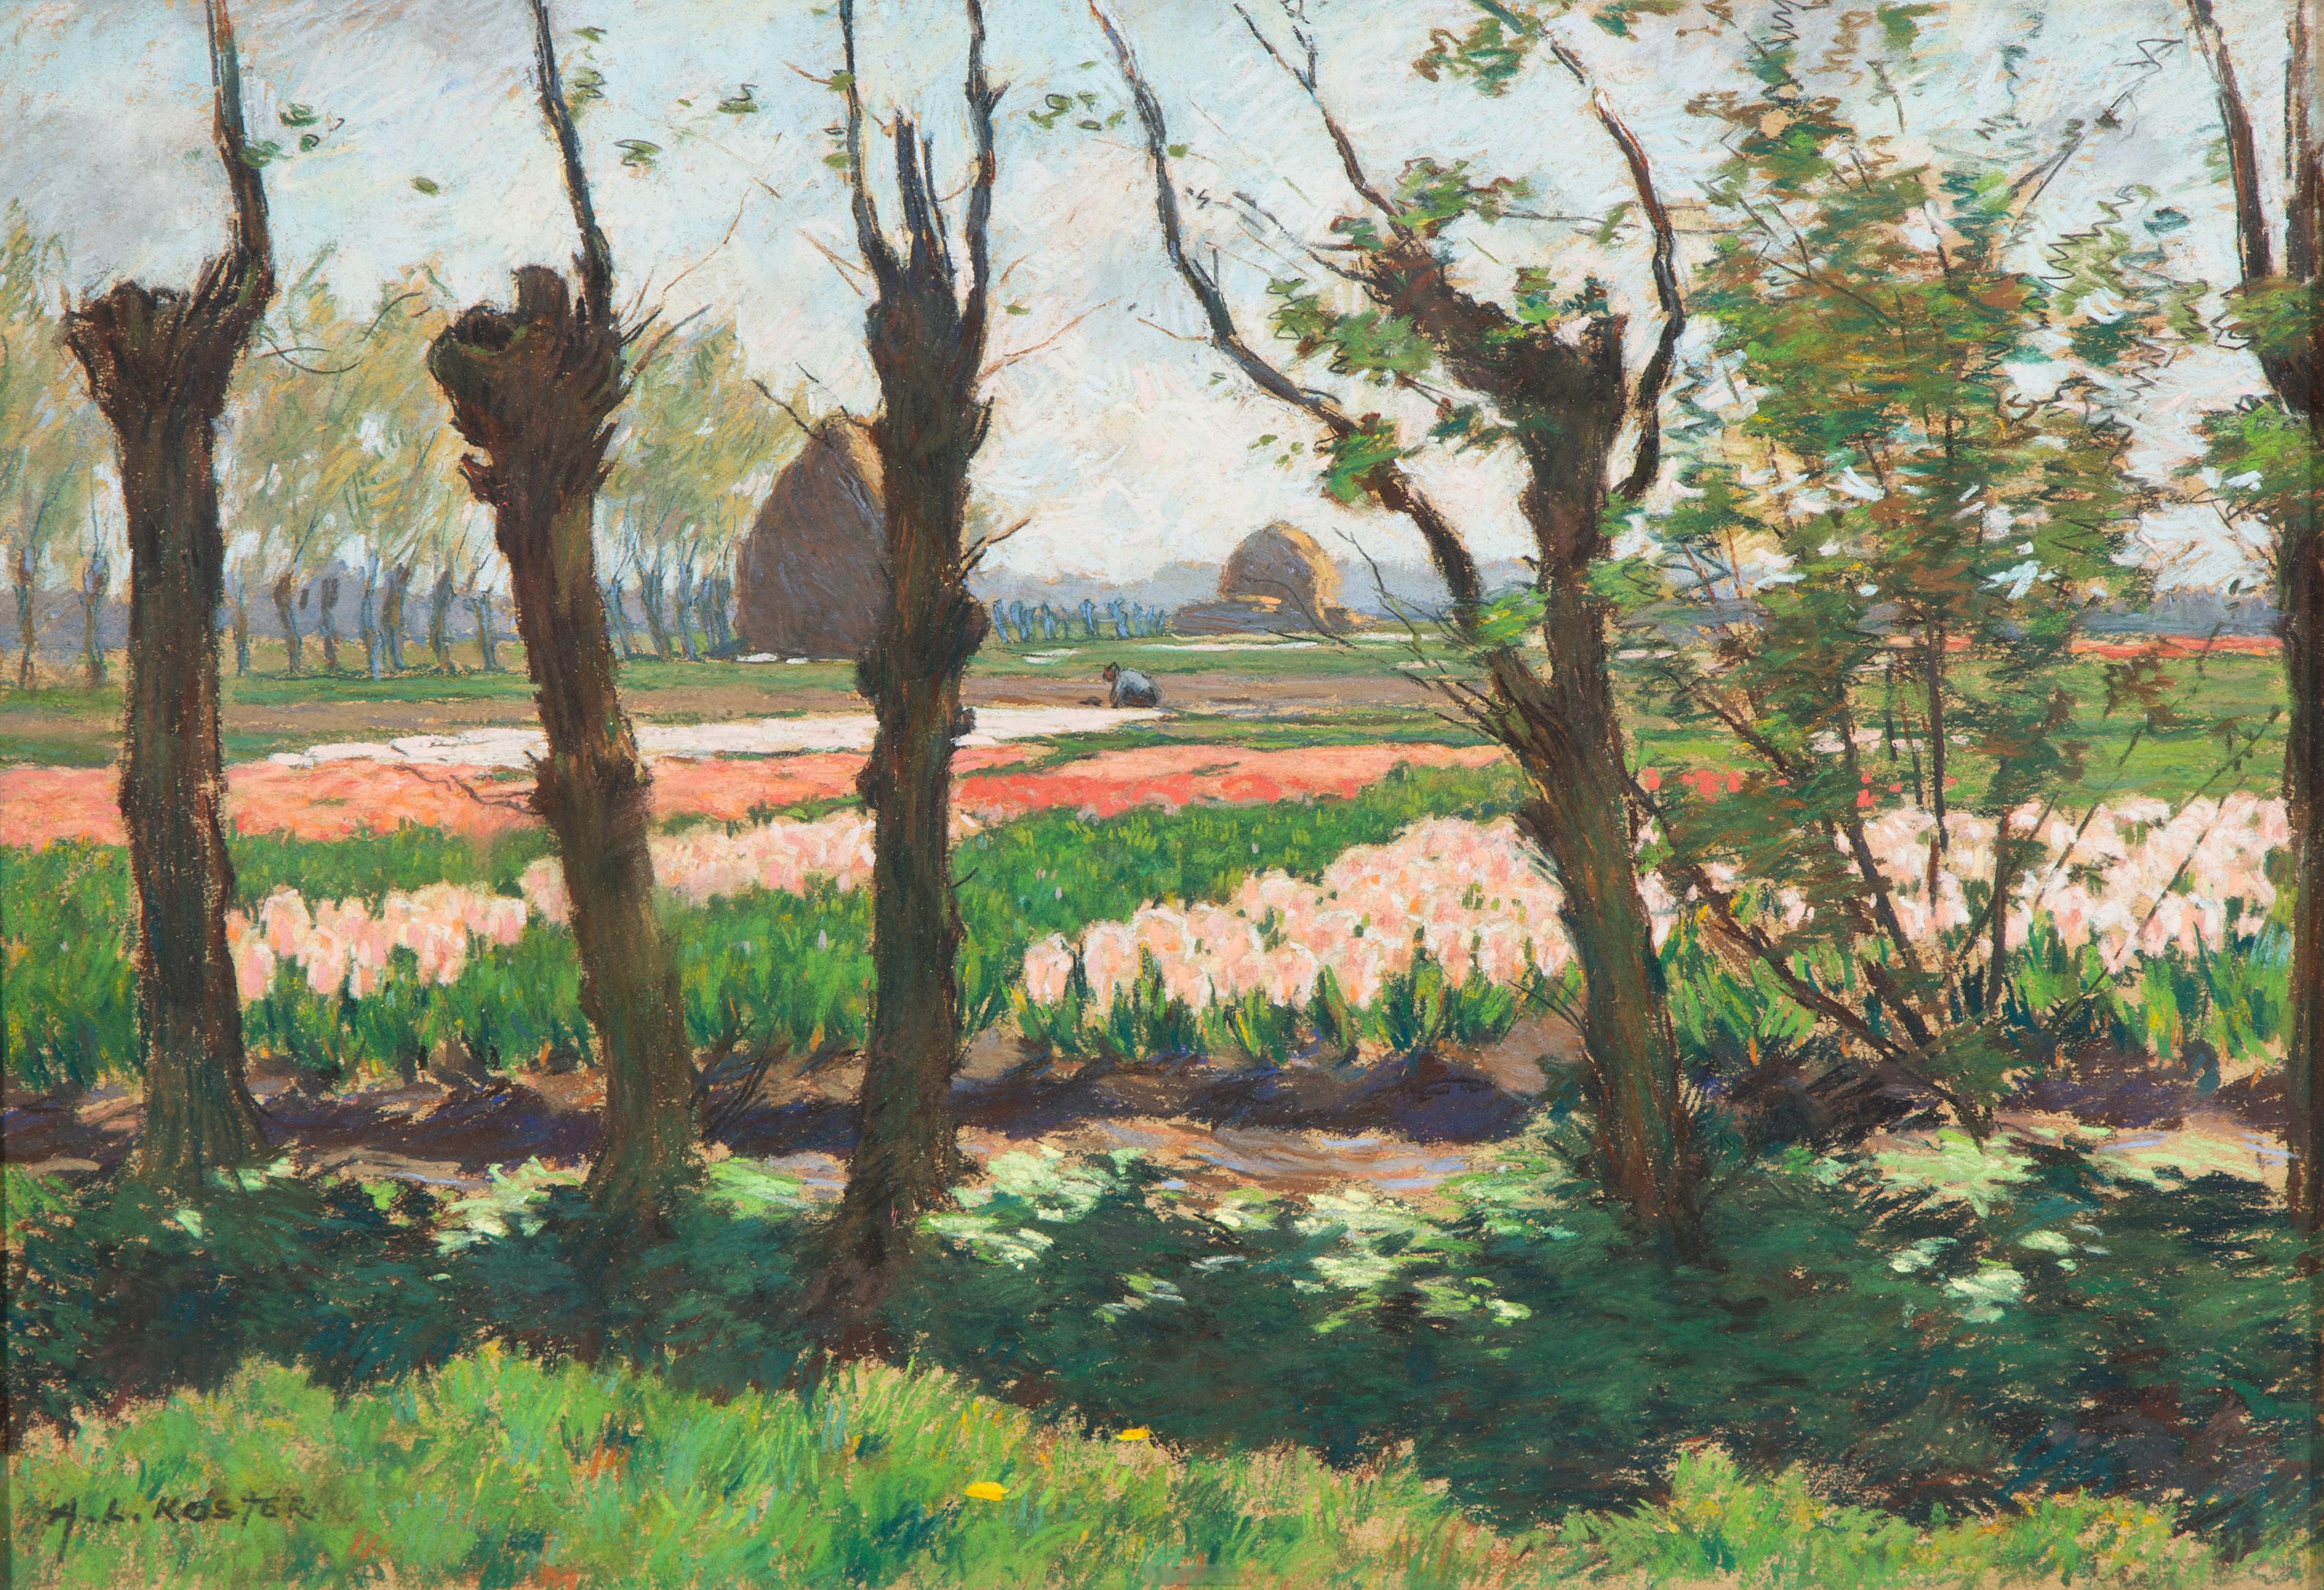 'Kweekerij met rose en roode hyacinthen' / Bulb fields with pink and red hyacinths